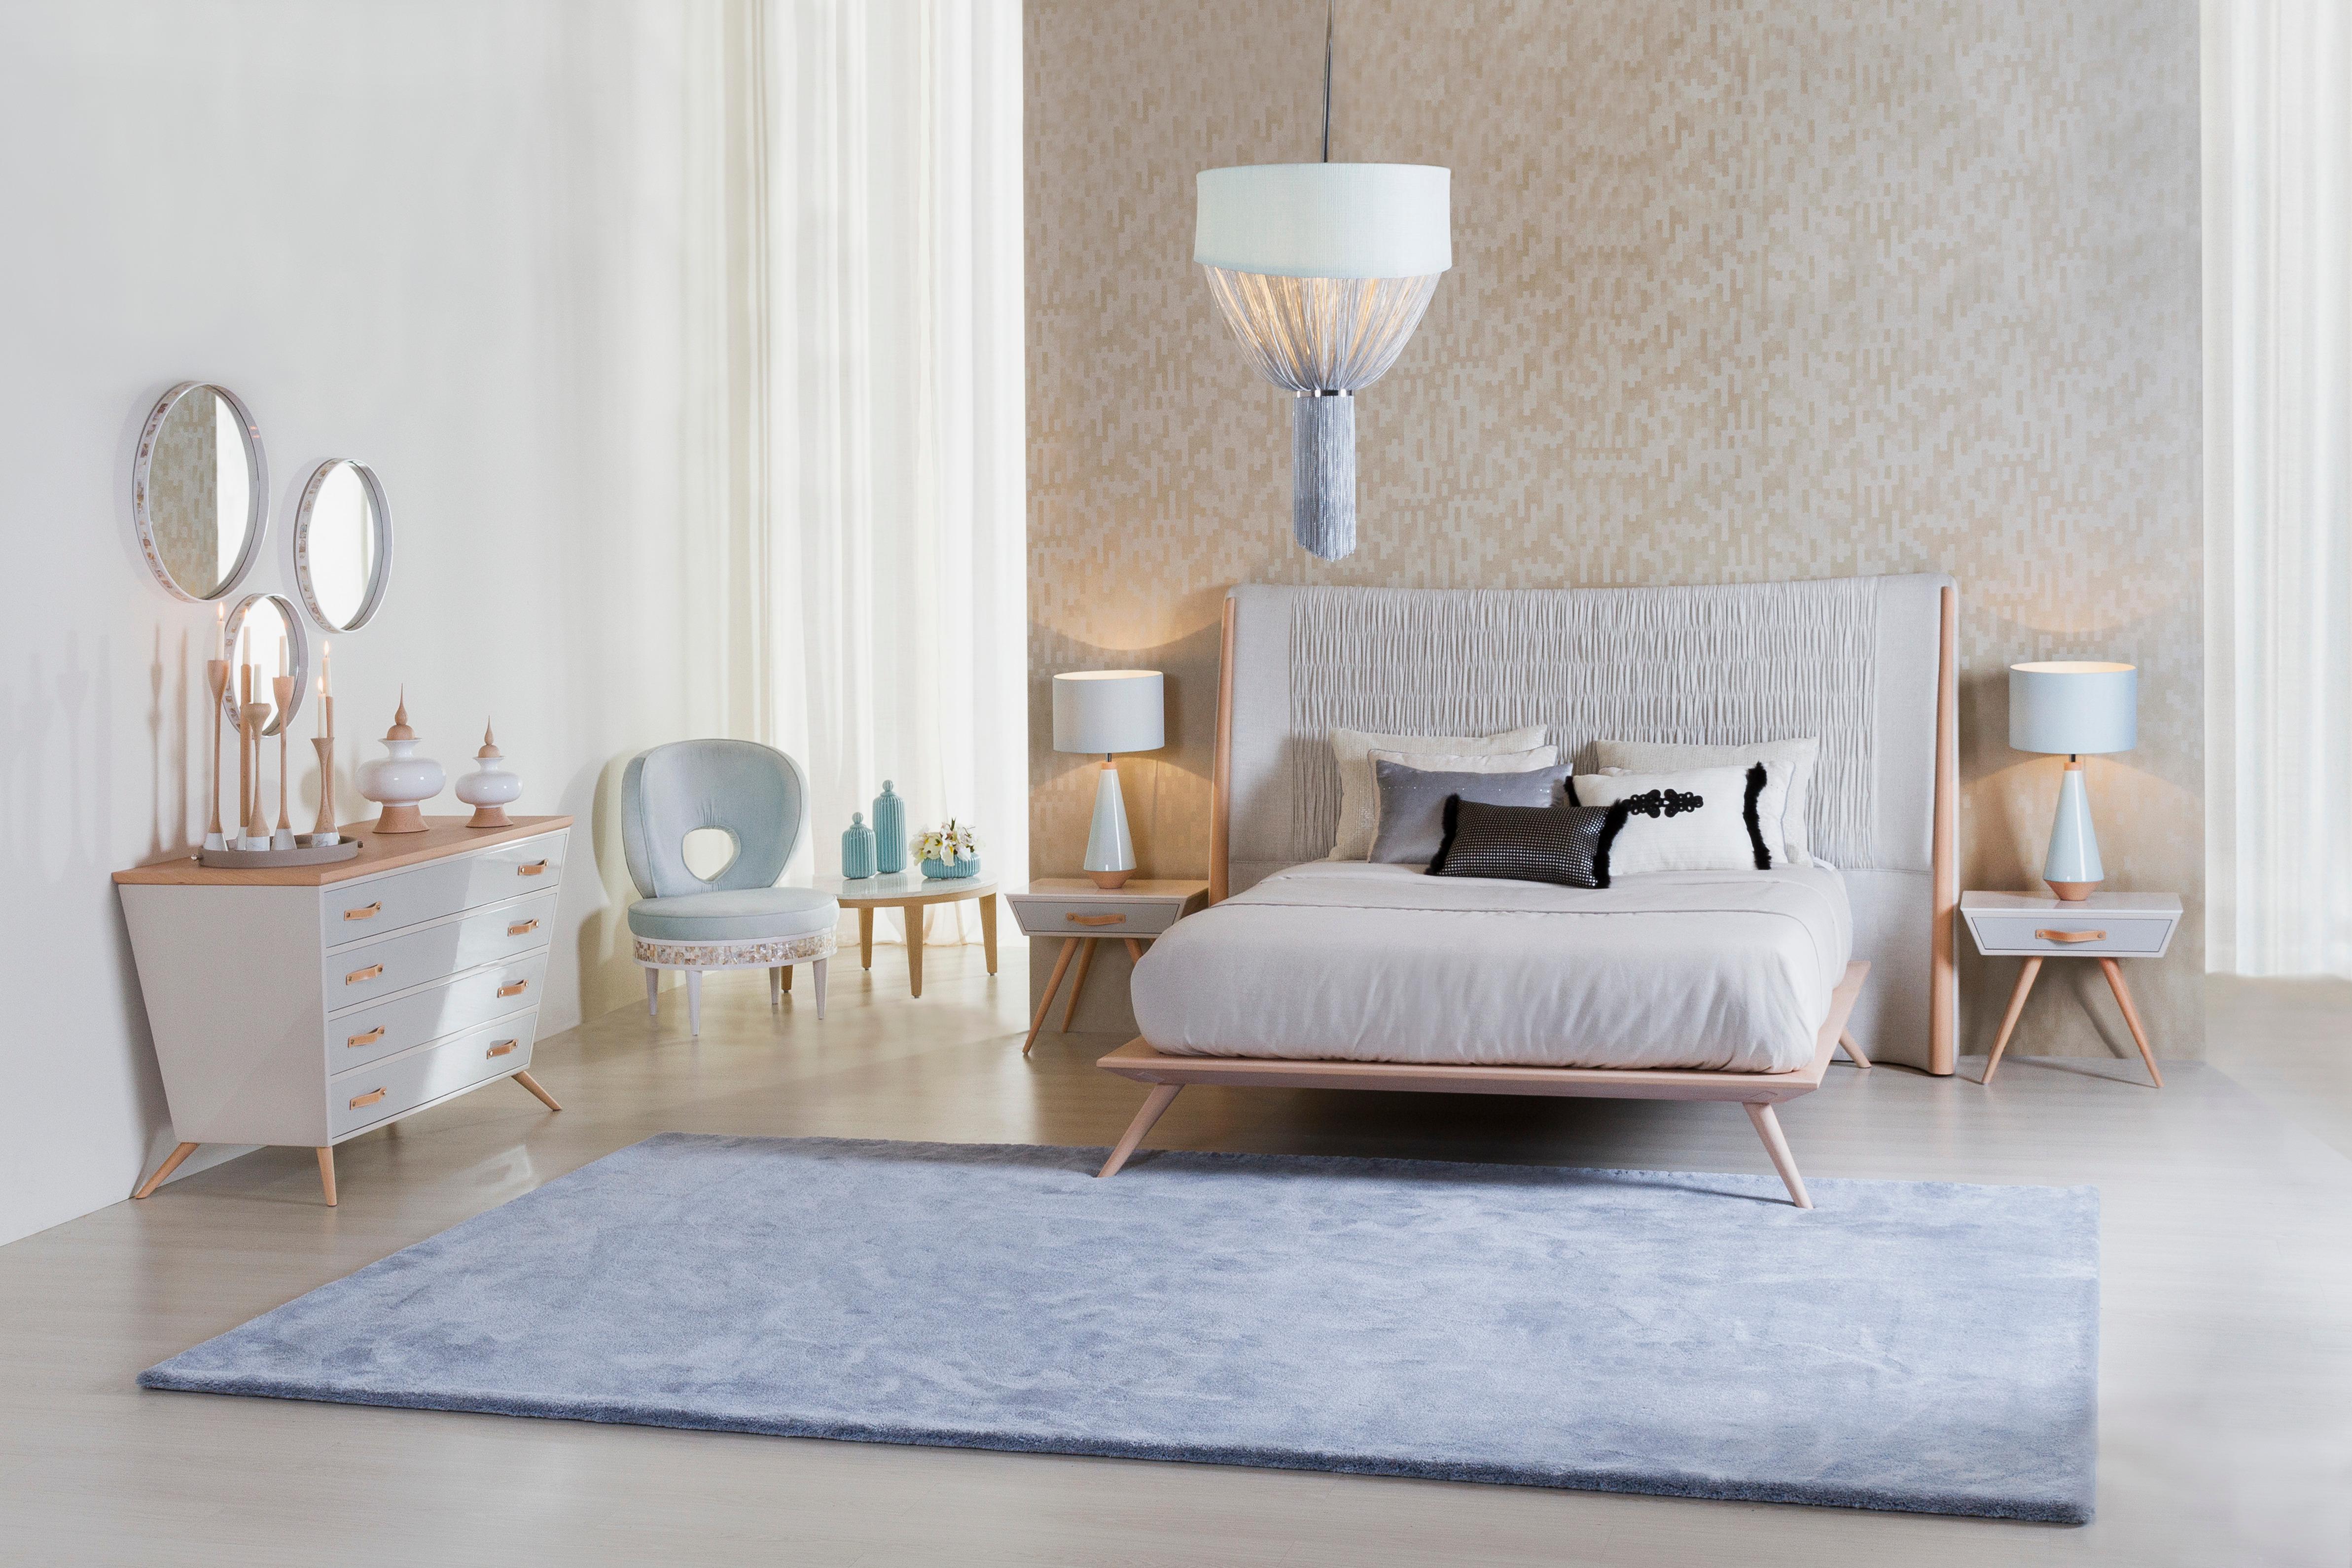 Doppelbett Dandelion, Modern Collection'S, handgefertigt in Portugal - Europa von GF Modern.

Dandelion ist ein elegantes Bett mit einem Kopfteil, das mit einem beigen Baumwoll-Leinen-Mischgewebe gepolstert ist. Es wurde entworfen, um modernen